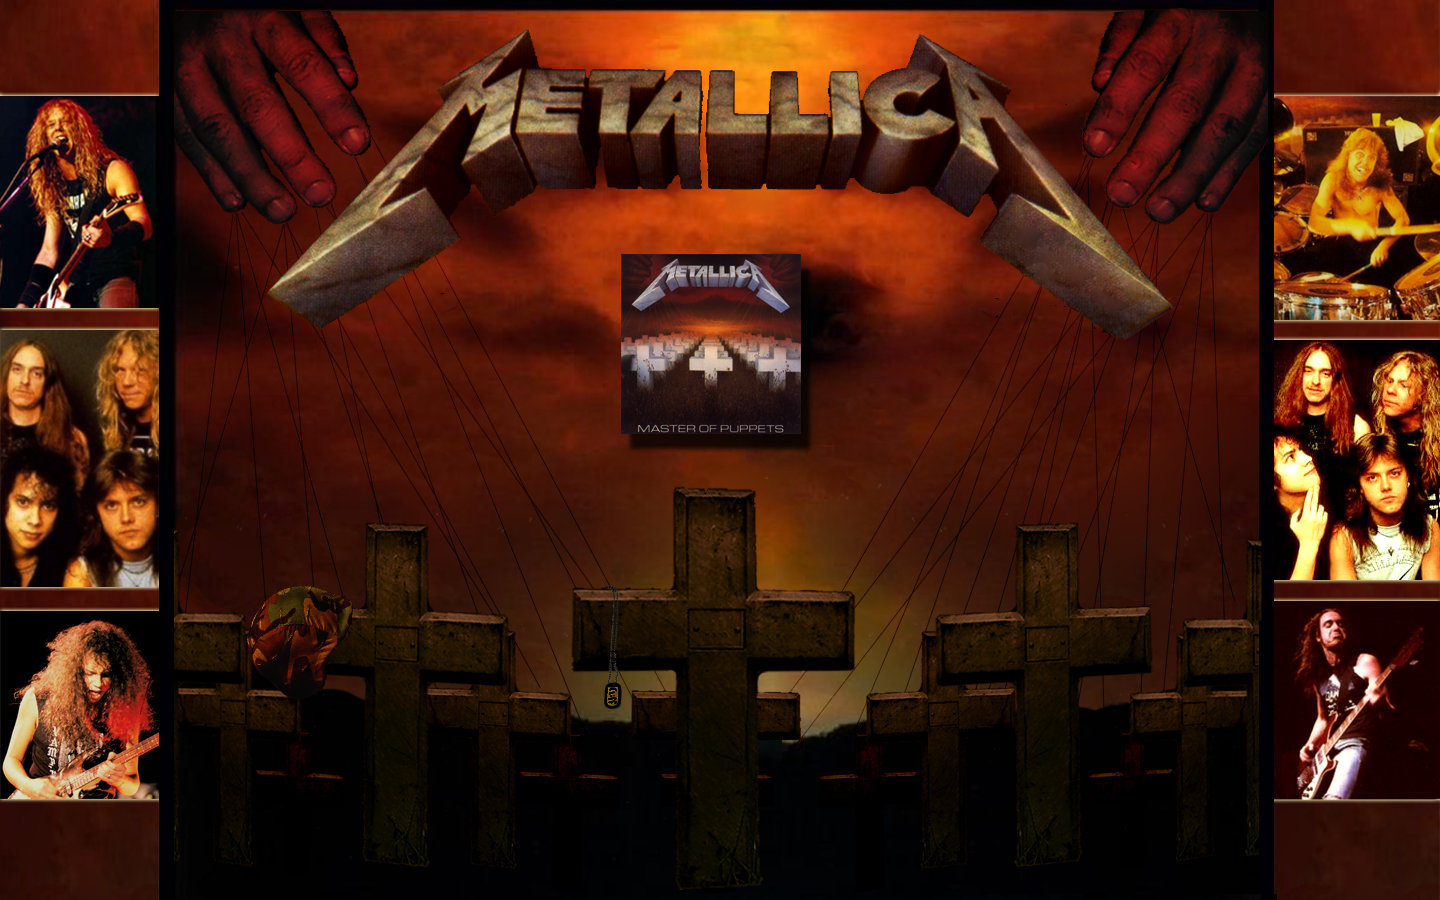 Hãy tải ngay hình nền Metallica Master Of Puppets đẹp nhất để thấy sự mạnh mẽ và căng thẳng của những ca khúc của ban nhạc Metallica! Với một thiết kế tuyệt vời và chất lượng hình ảnh độc đáo, những bộ hình này đáng để bạn sở hữu.